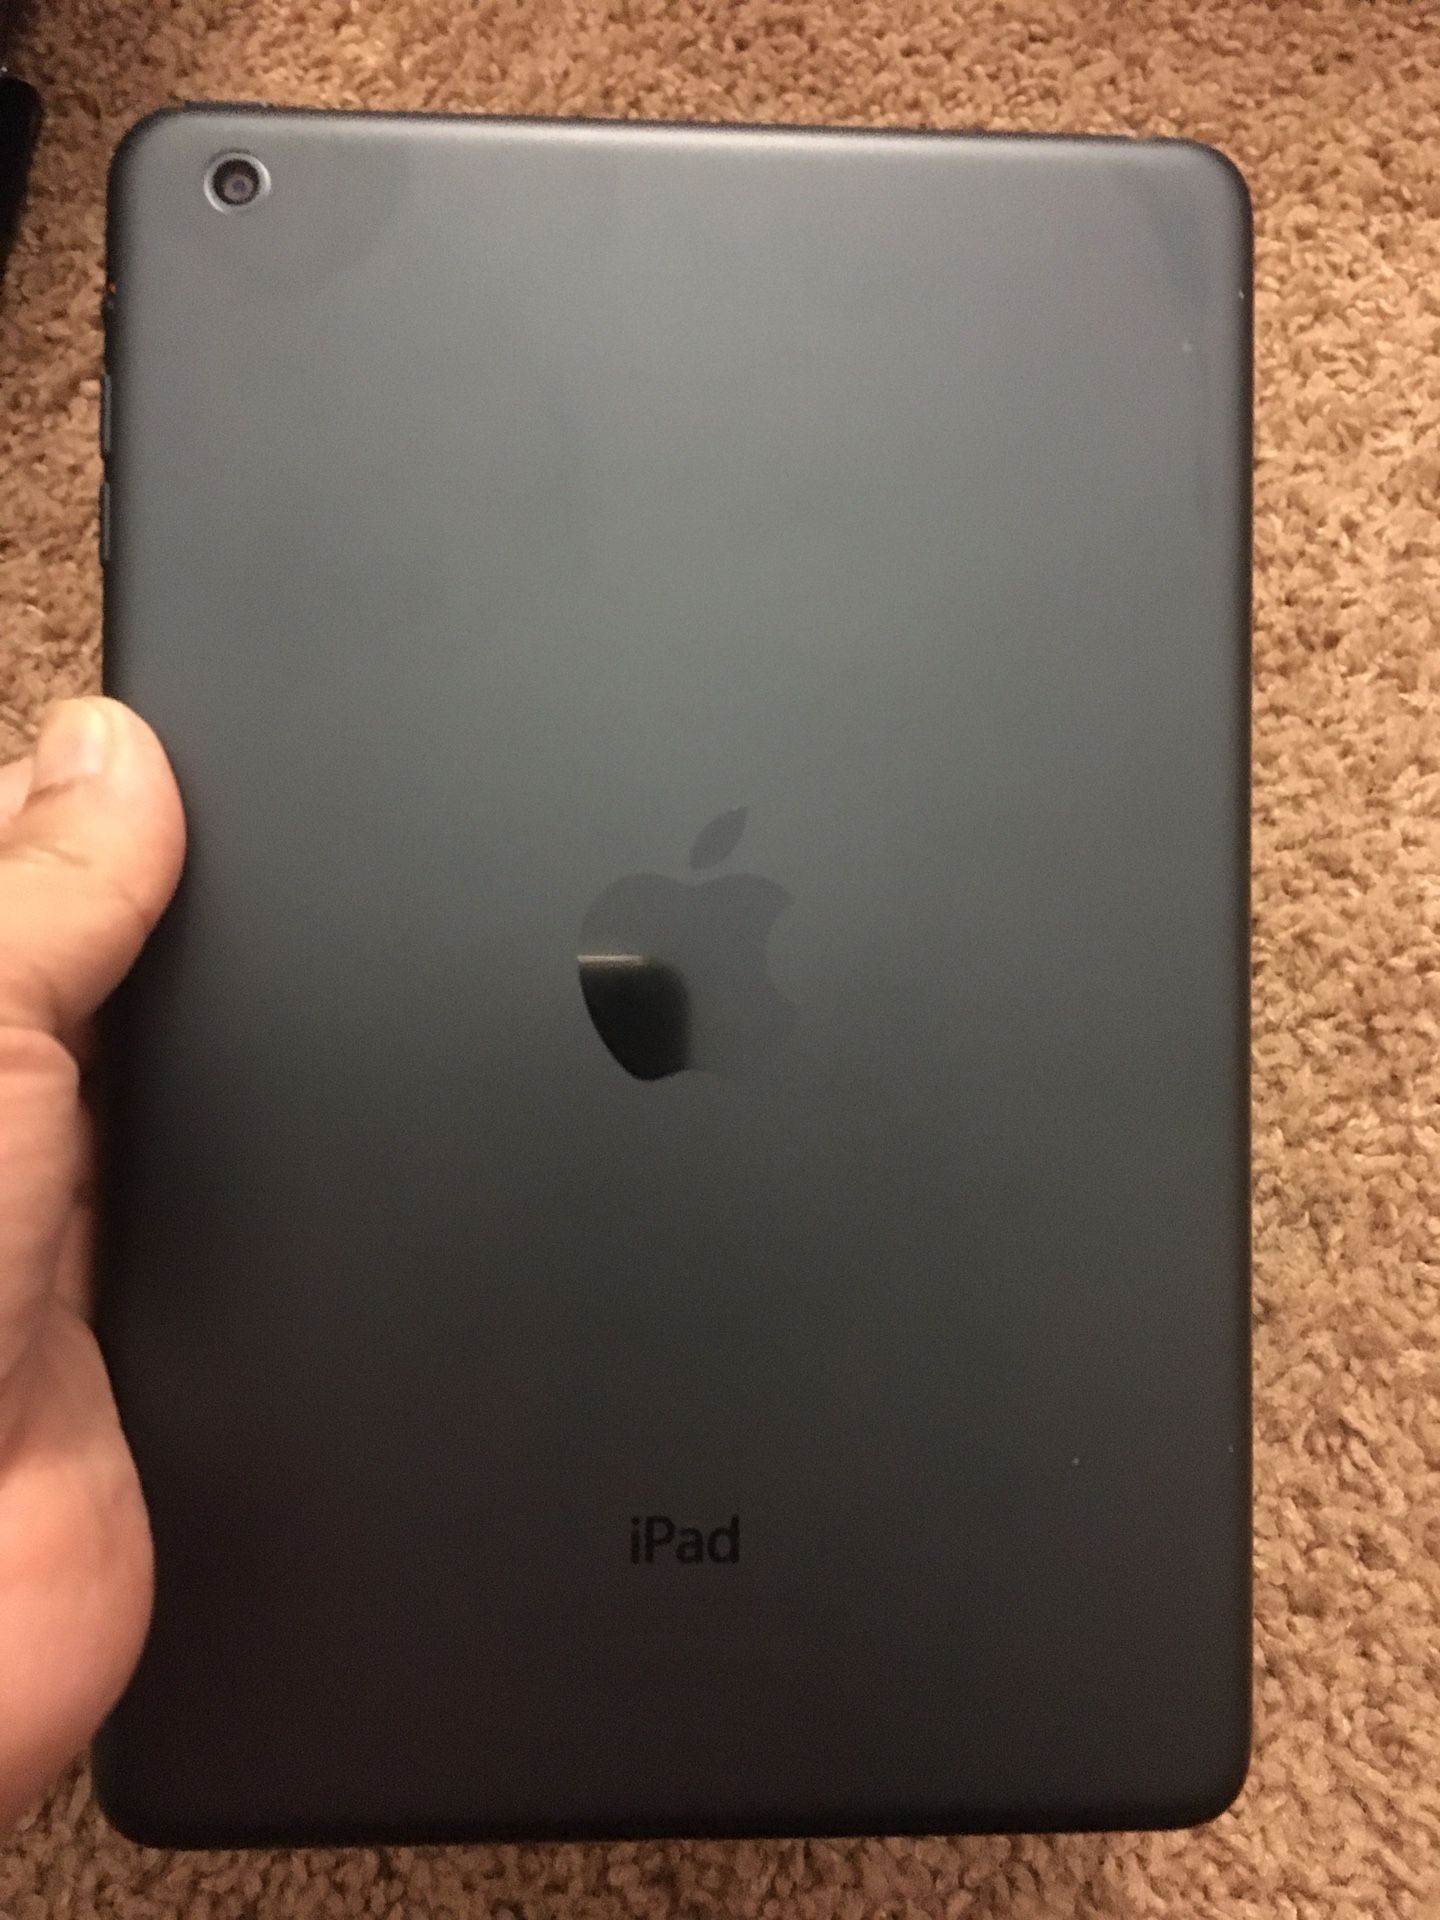 iPad Mini 16 GB